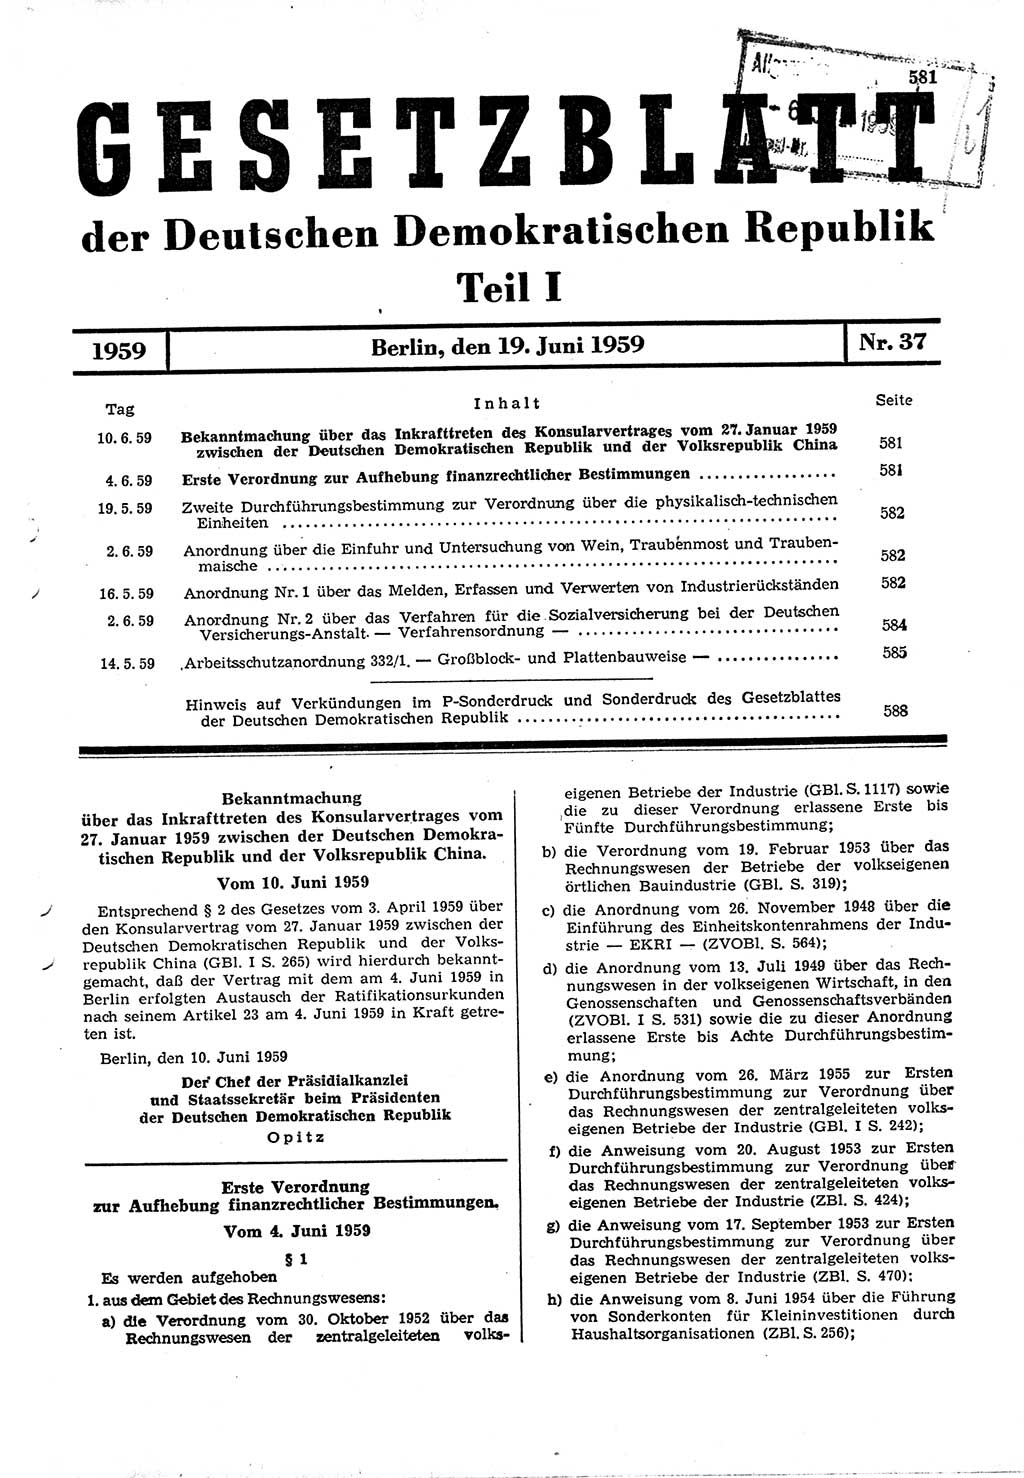 Gesetzblatt (GBl.) der Deutschen Demokratischen Republik (DDR) Teil Ⅰ 1959, Seite 581 (GBl. DDR Ⅰ 1959, S. 581)